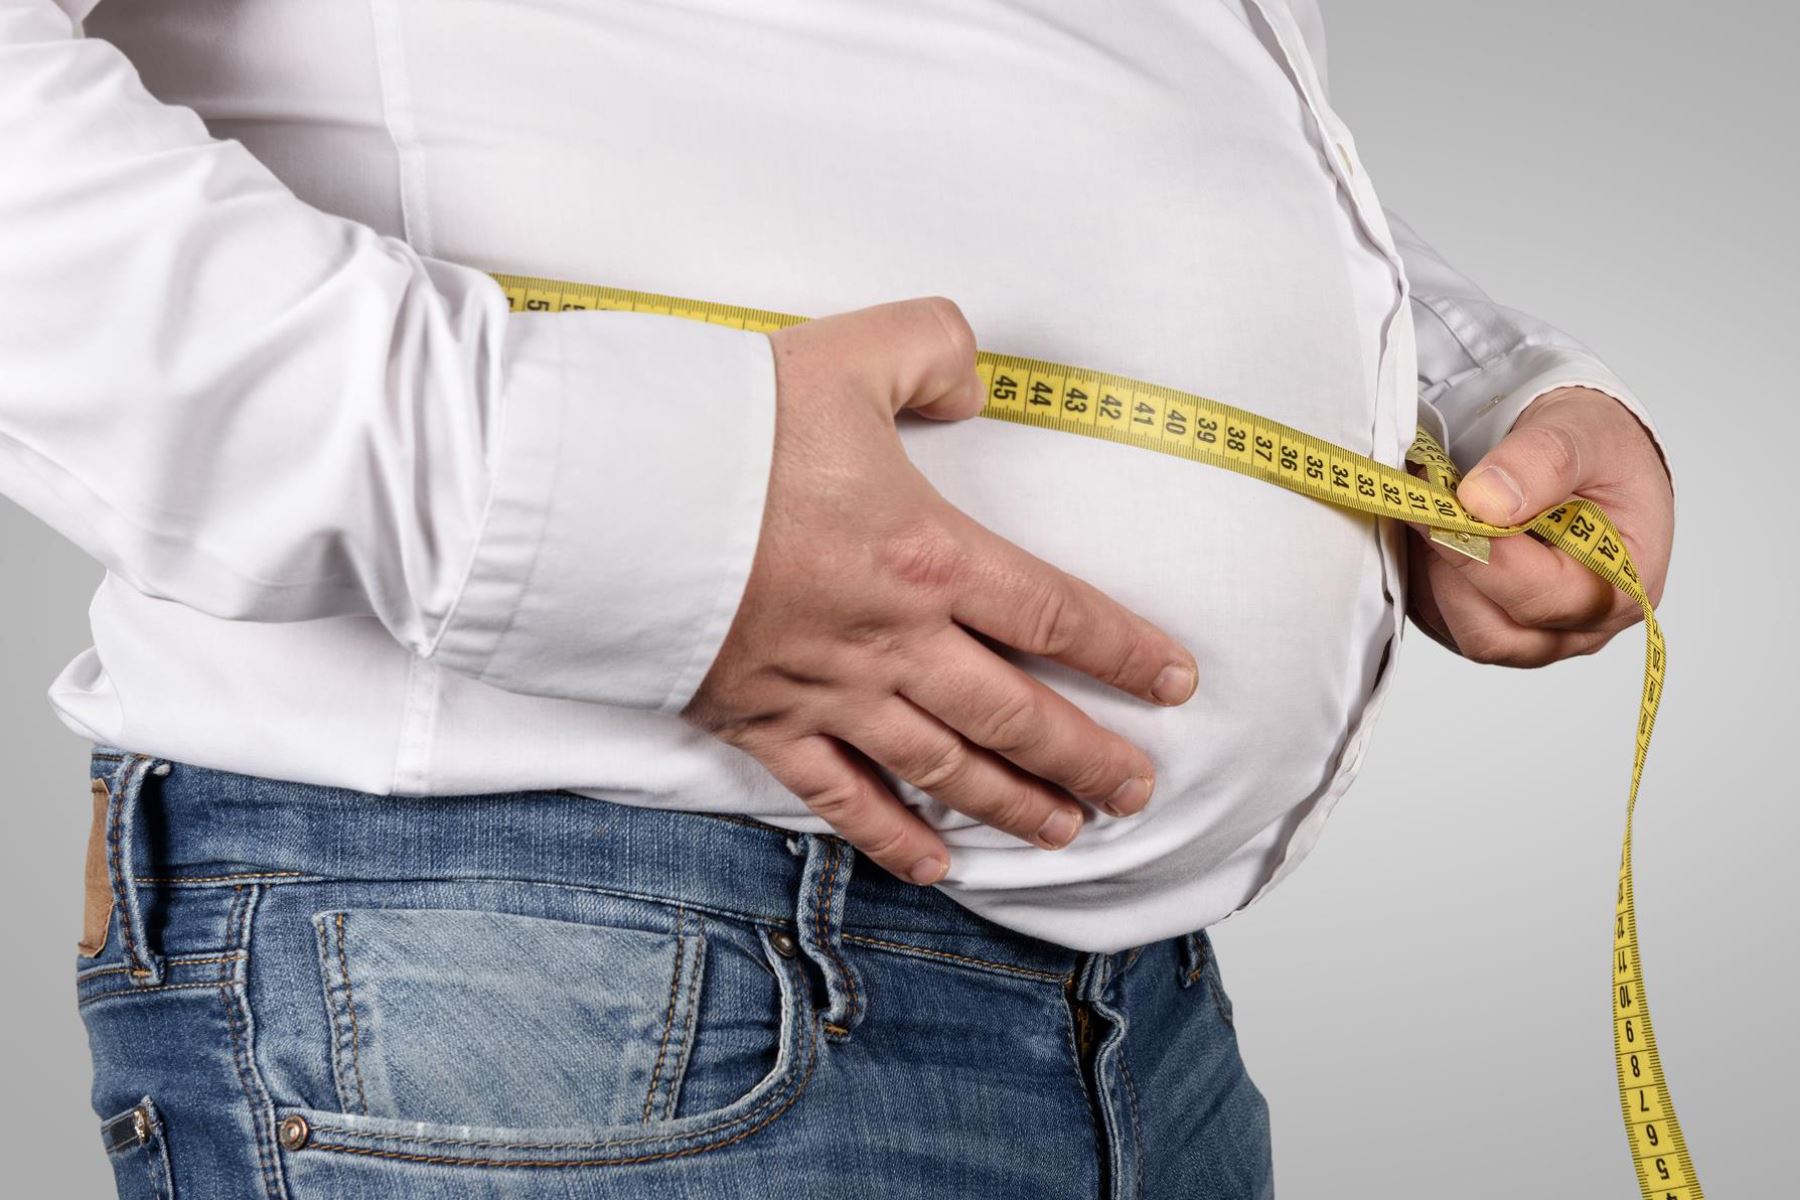 El sobrepeso incrementa mortalidad por covid-19, recuerda experta Saby Mauricio. Foto: ANDINA/Difusión